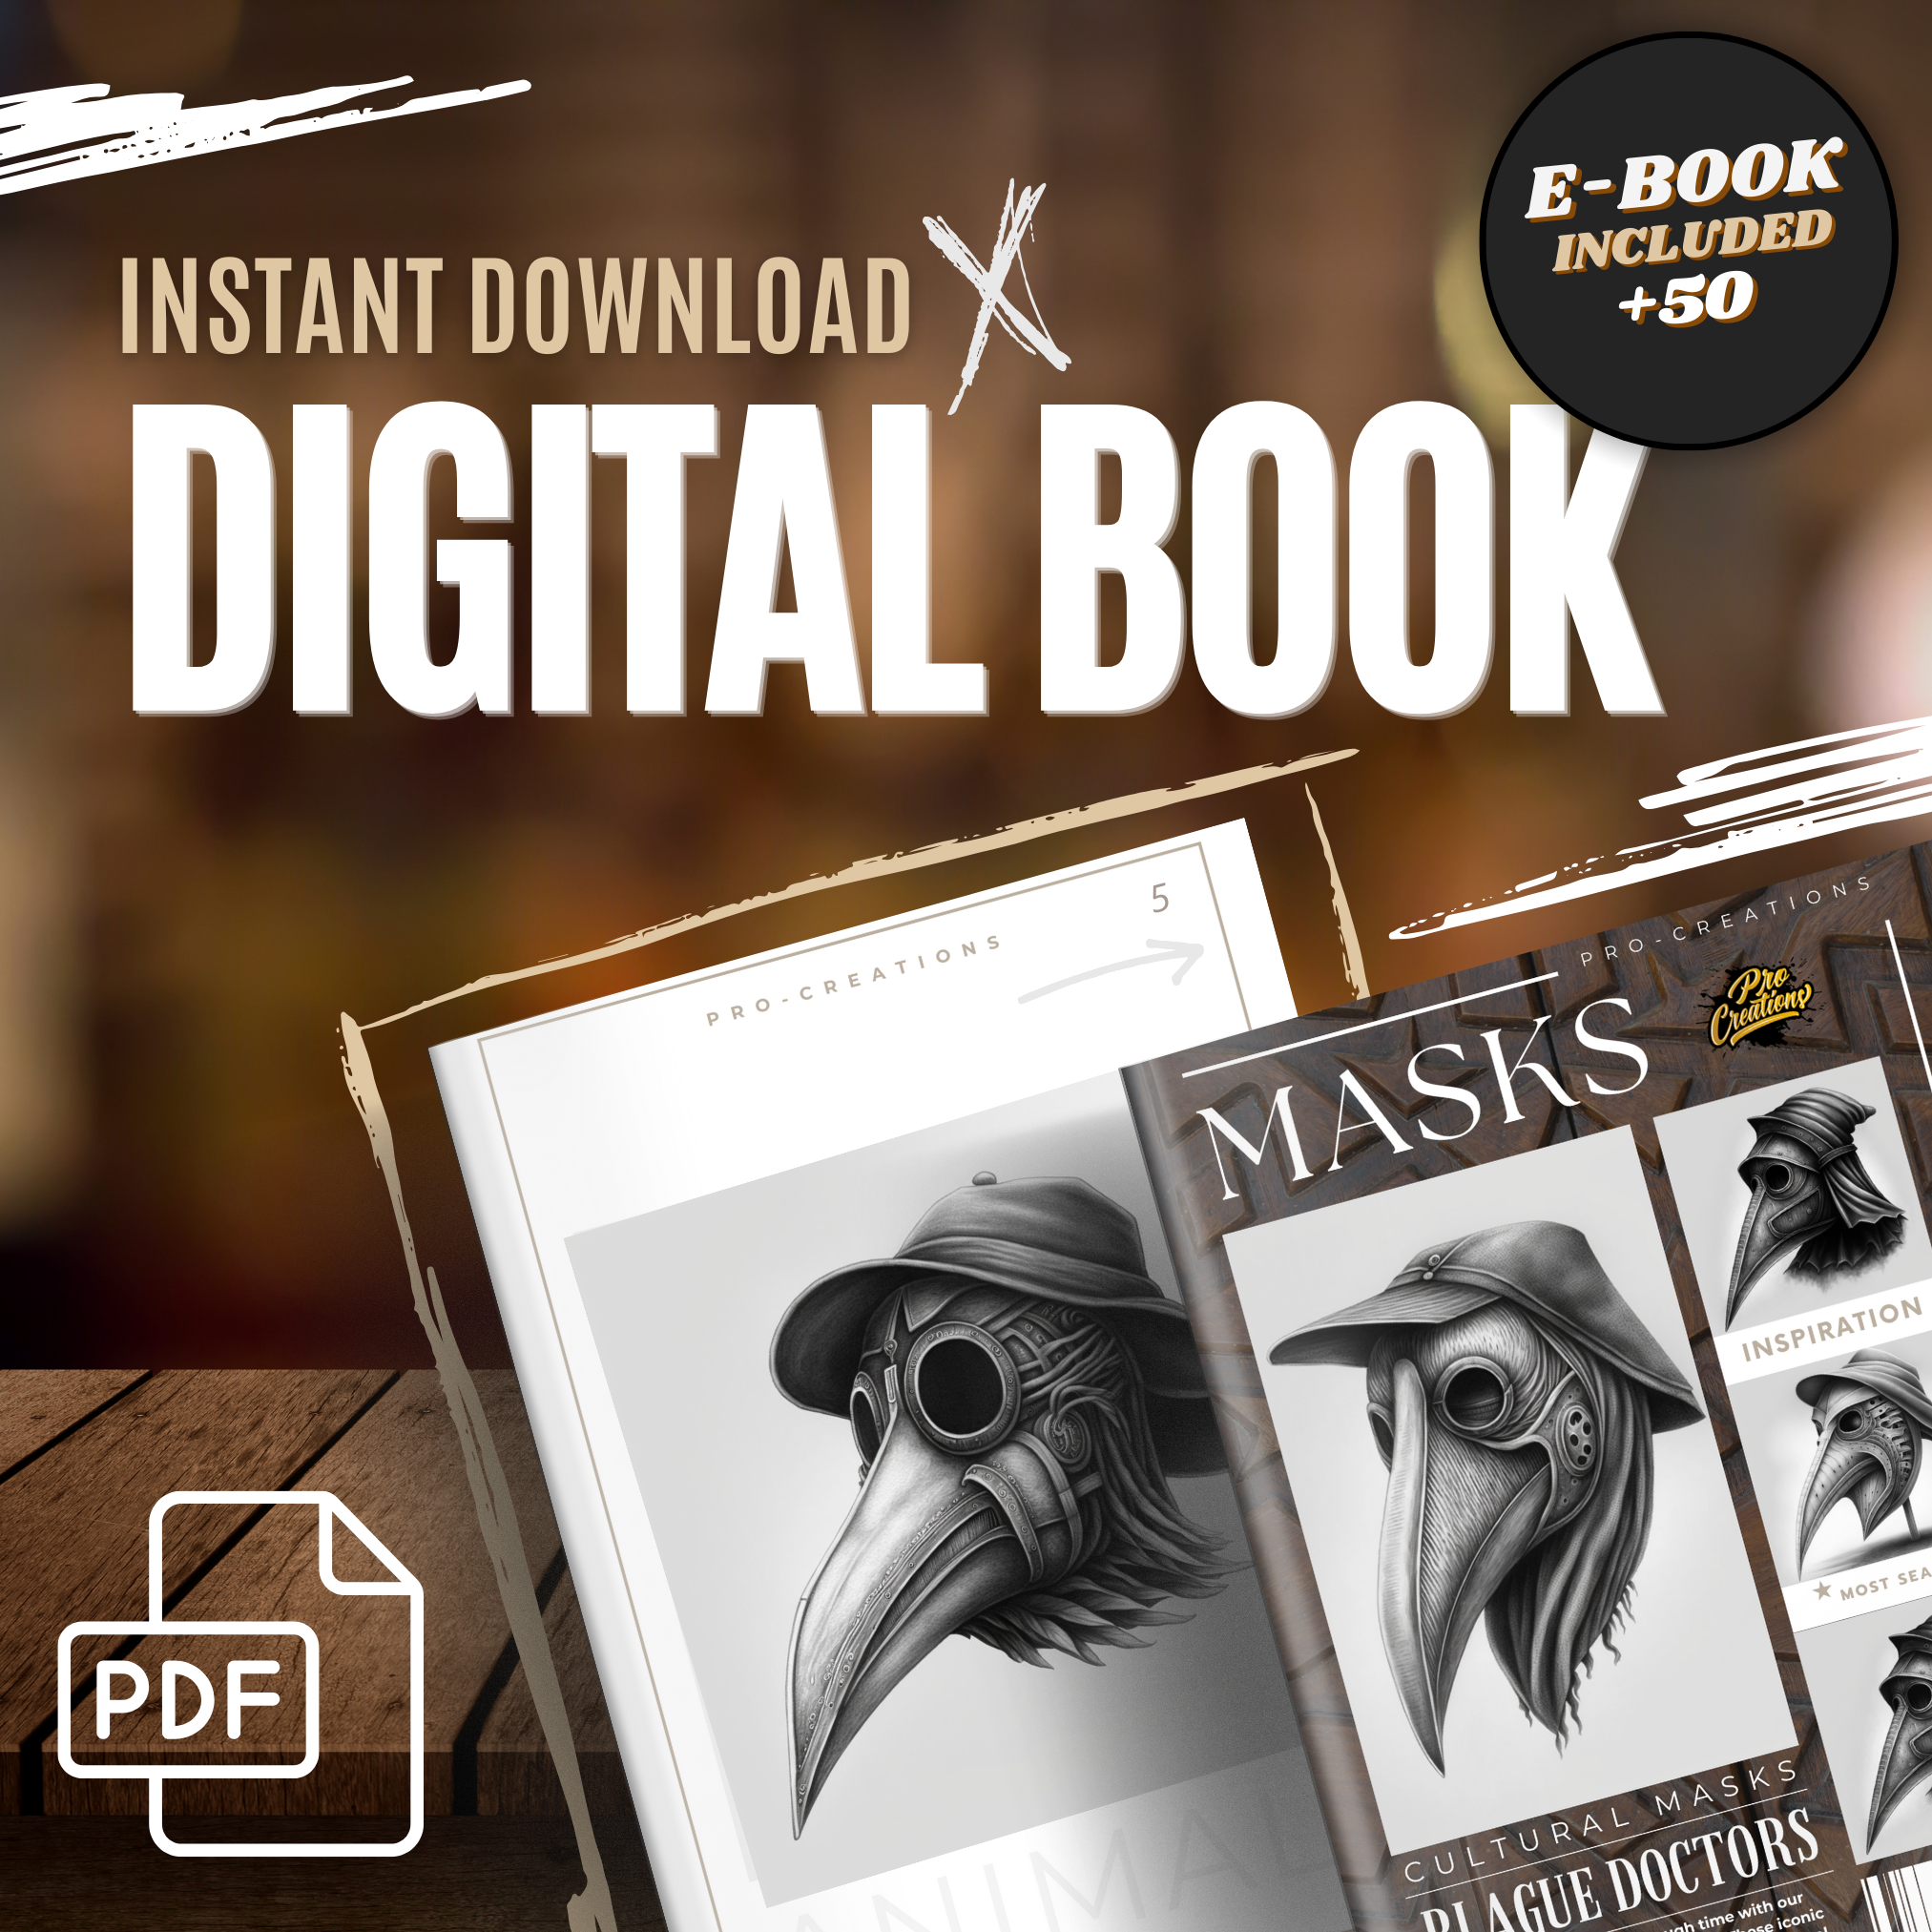 Plague Doctor Masks Digital Reference Design Collection: 50 Procreate & Sketchbook Images